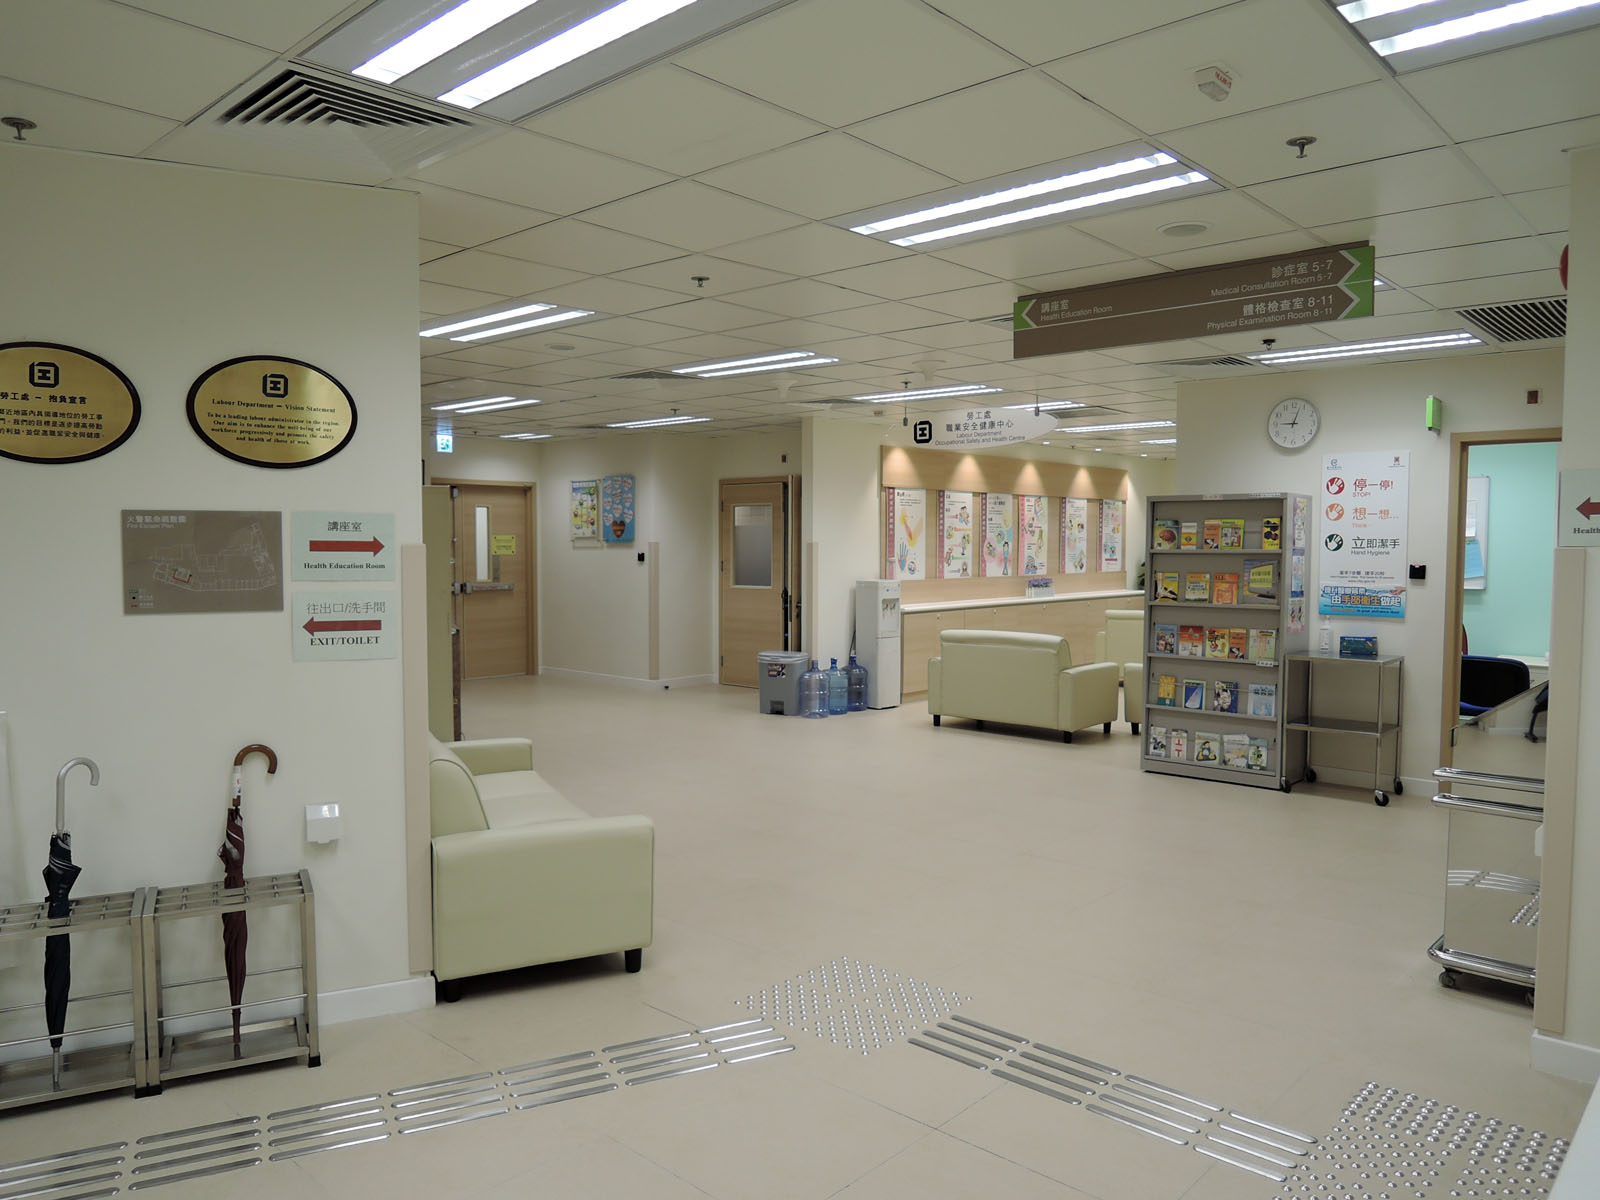 相片 3: 職業安全健康中心及觀塘職業健康診所